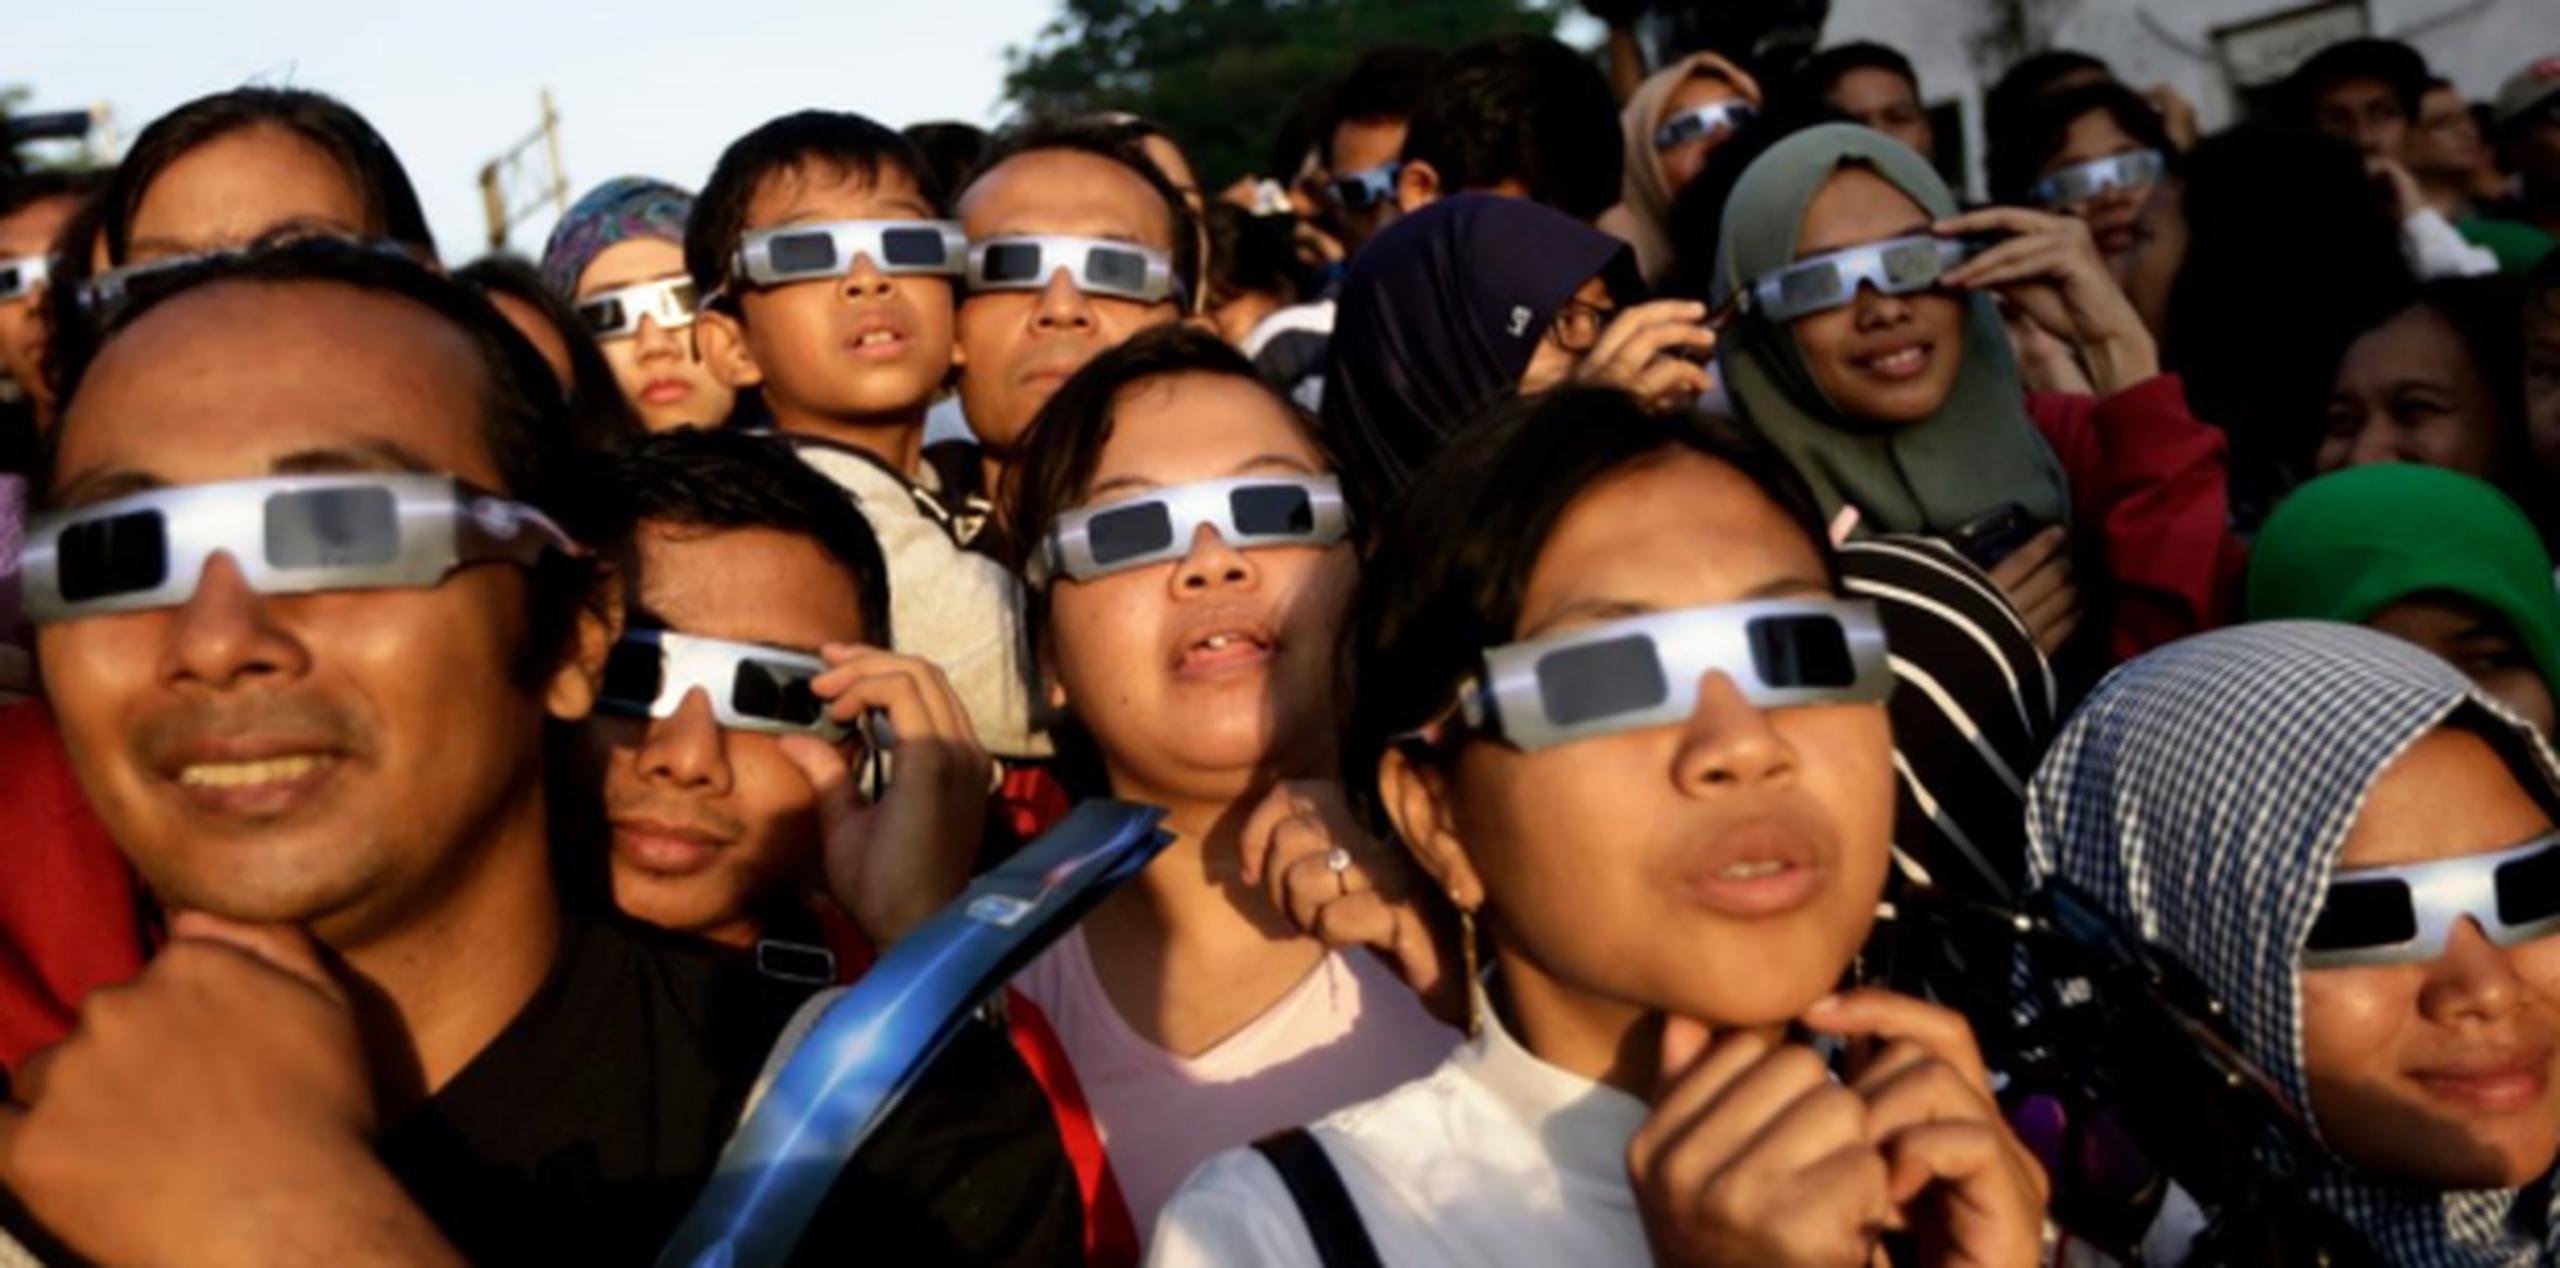 Para evitar daños en la vista durante el eclipse, la Sociedad Puertorriqueña de Oftalmología recomienda utilizar lentes especializados para ver eclipses solares. (AP)